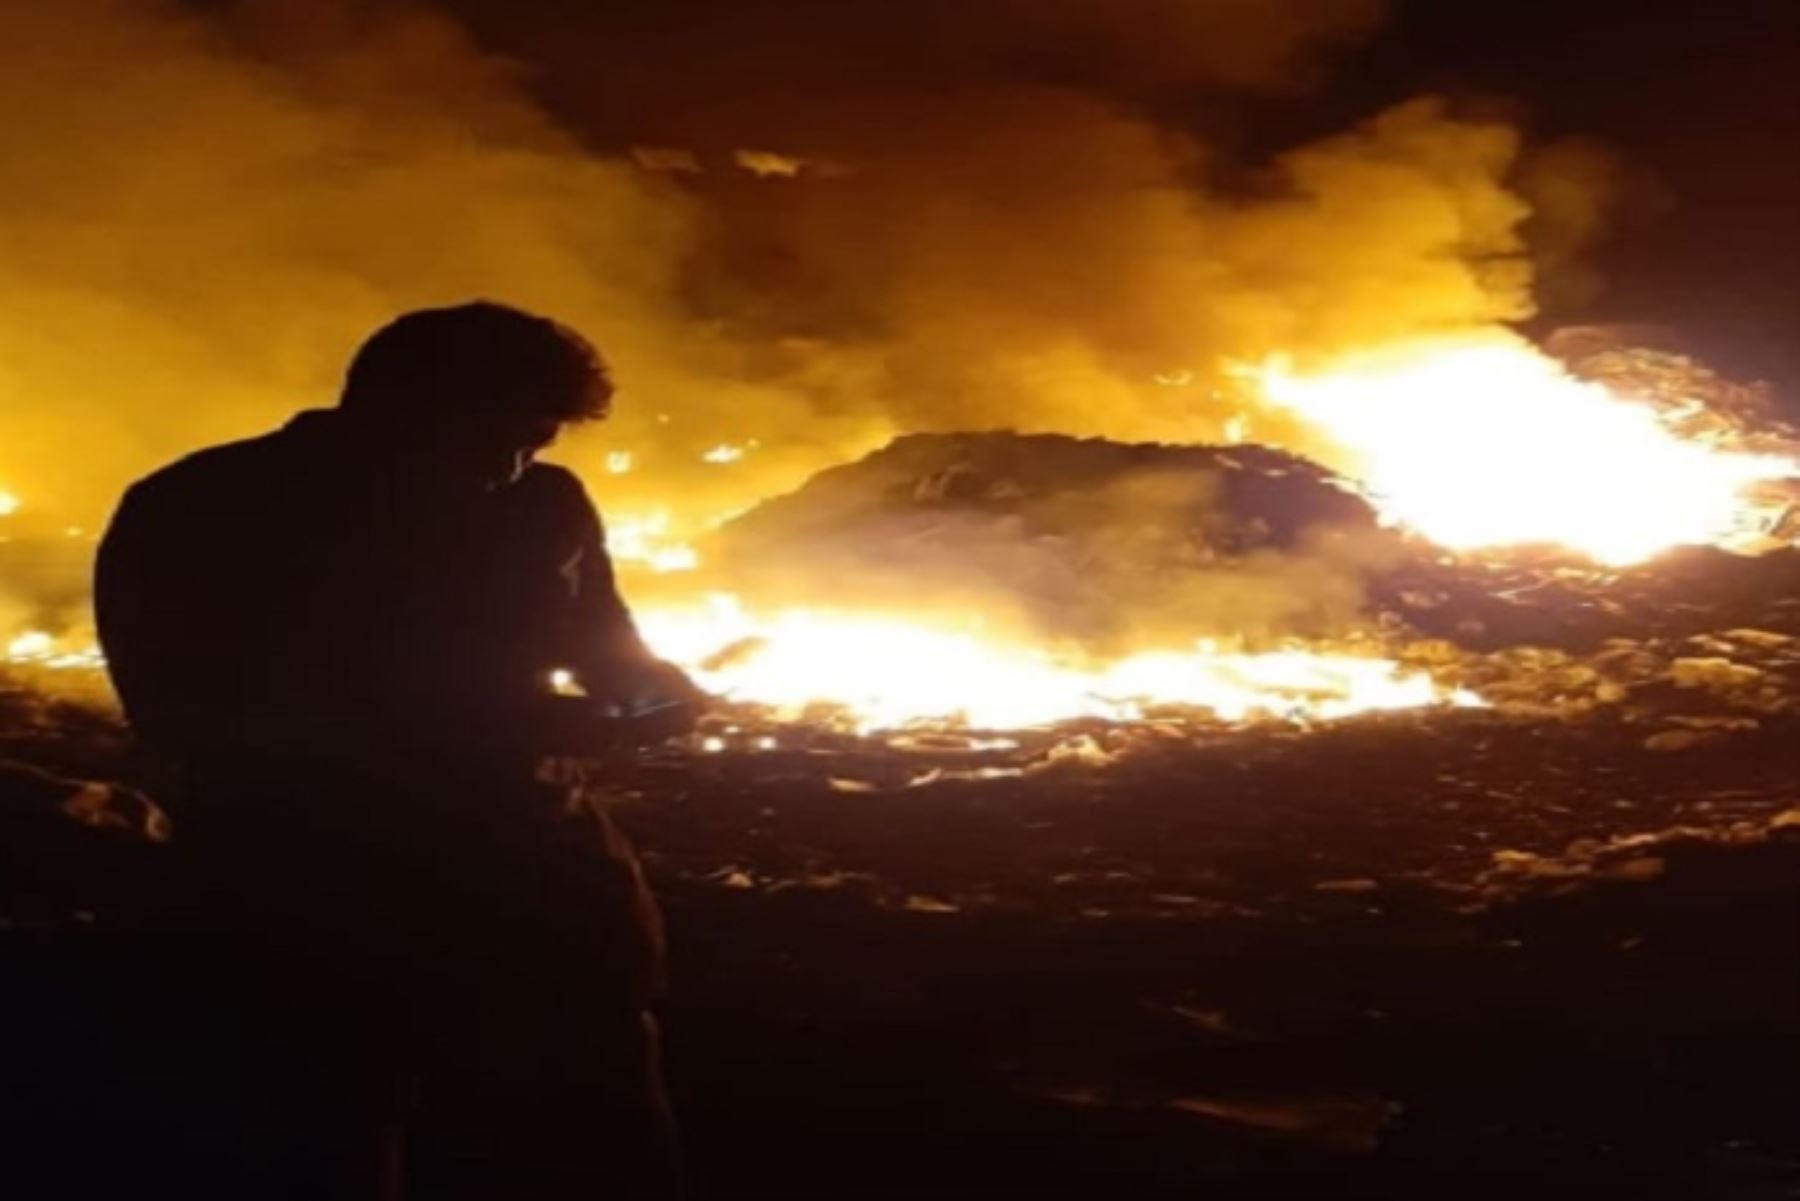 El humo del dantesco incendio que se desató anoche en el botadero informal de basura, ubicado en el límite de los distritos de Chimbote y Coishco, en la región Áncash, afectaron a los moradores de los pueblos cercanos de este lugar; informaron las autoridades locales.